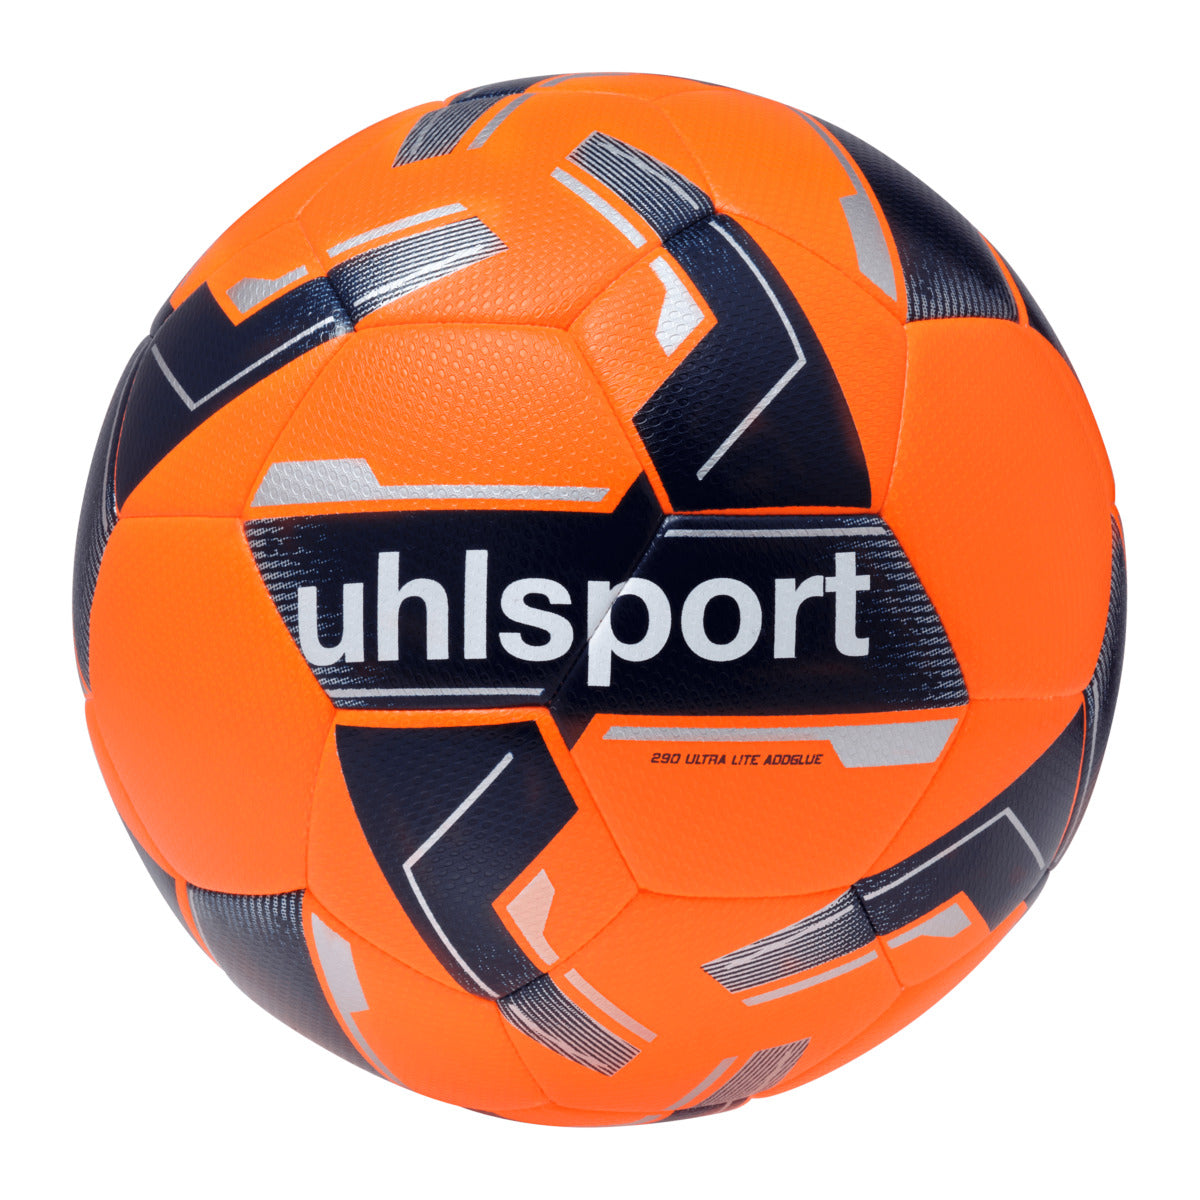 Uhlsport 290 Ultra Lite Addglue - Fluo Orange/Navy/Silver